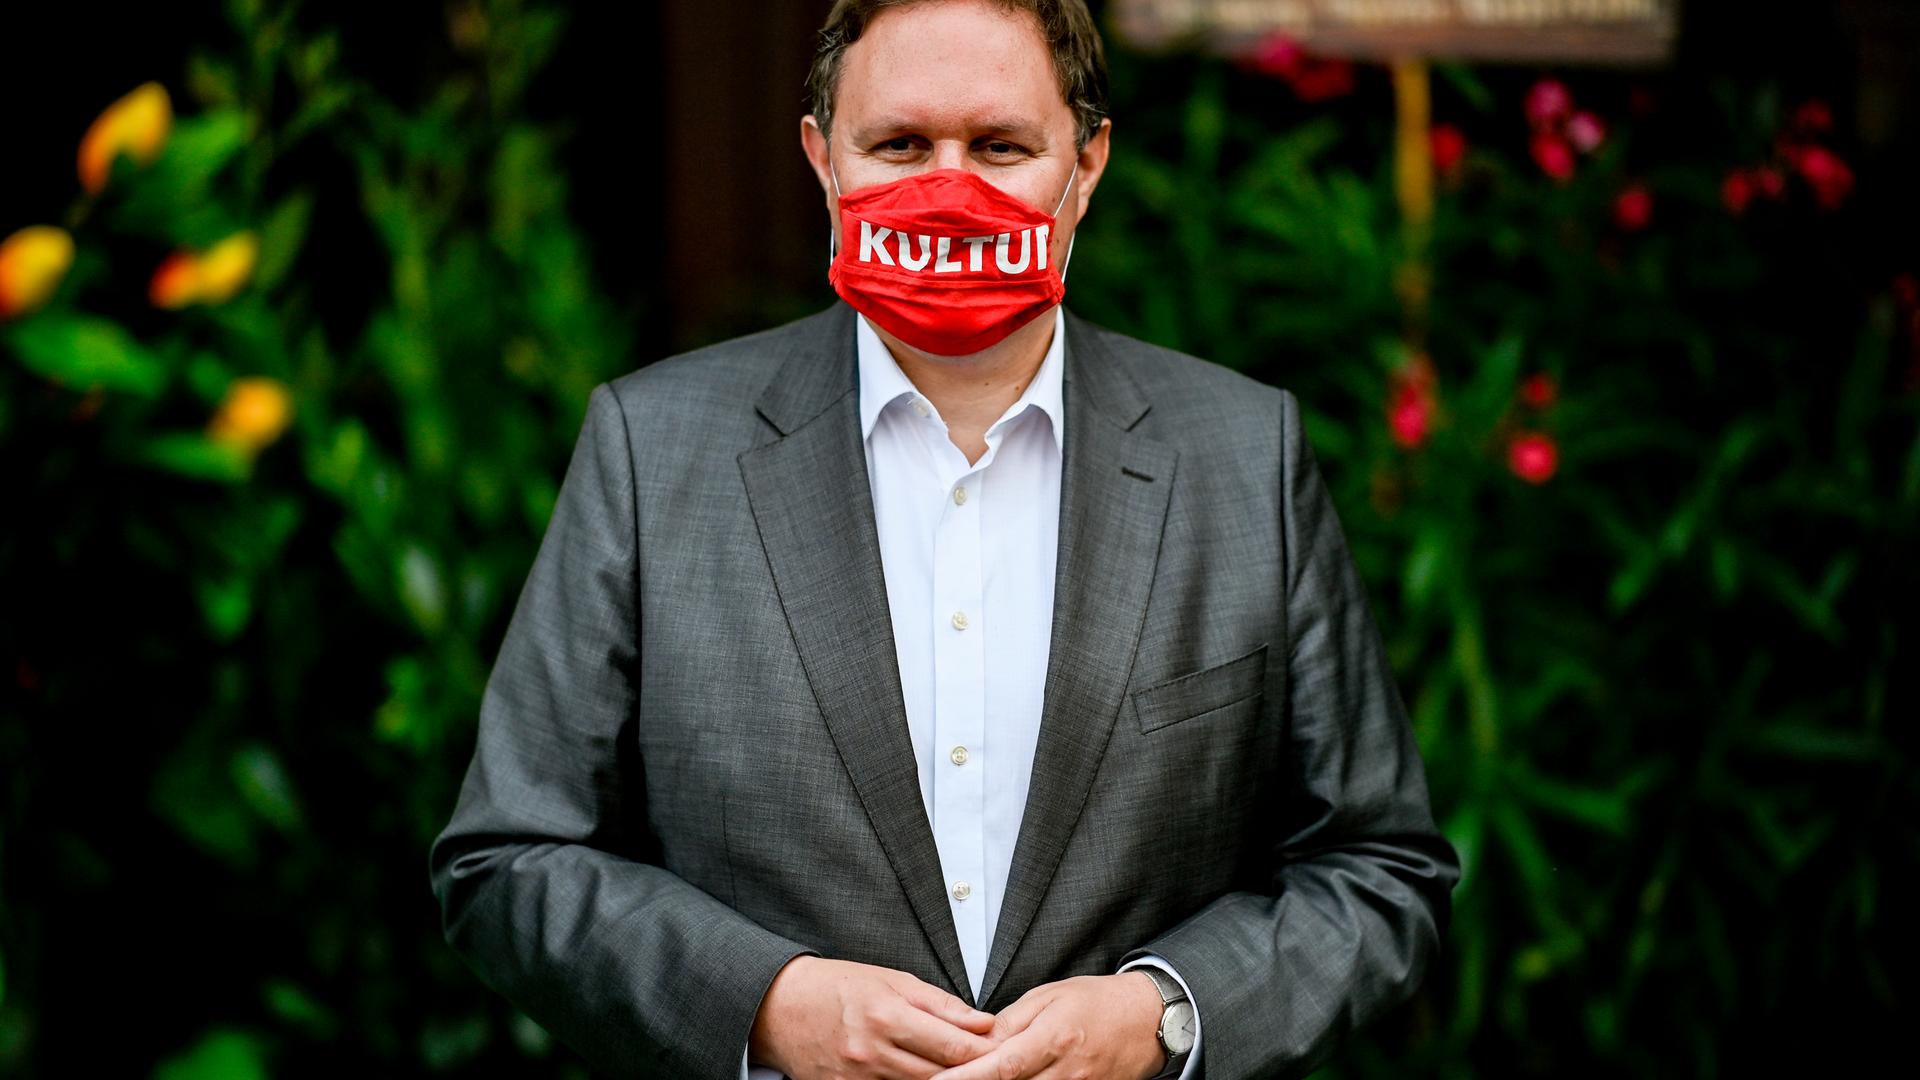 Carsten Brosda trägt einen roten Mundnasenschutz mit der Aufschrift "Kultur".